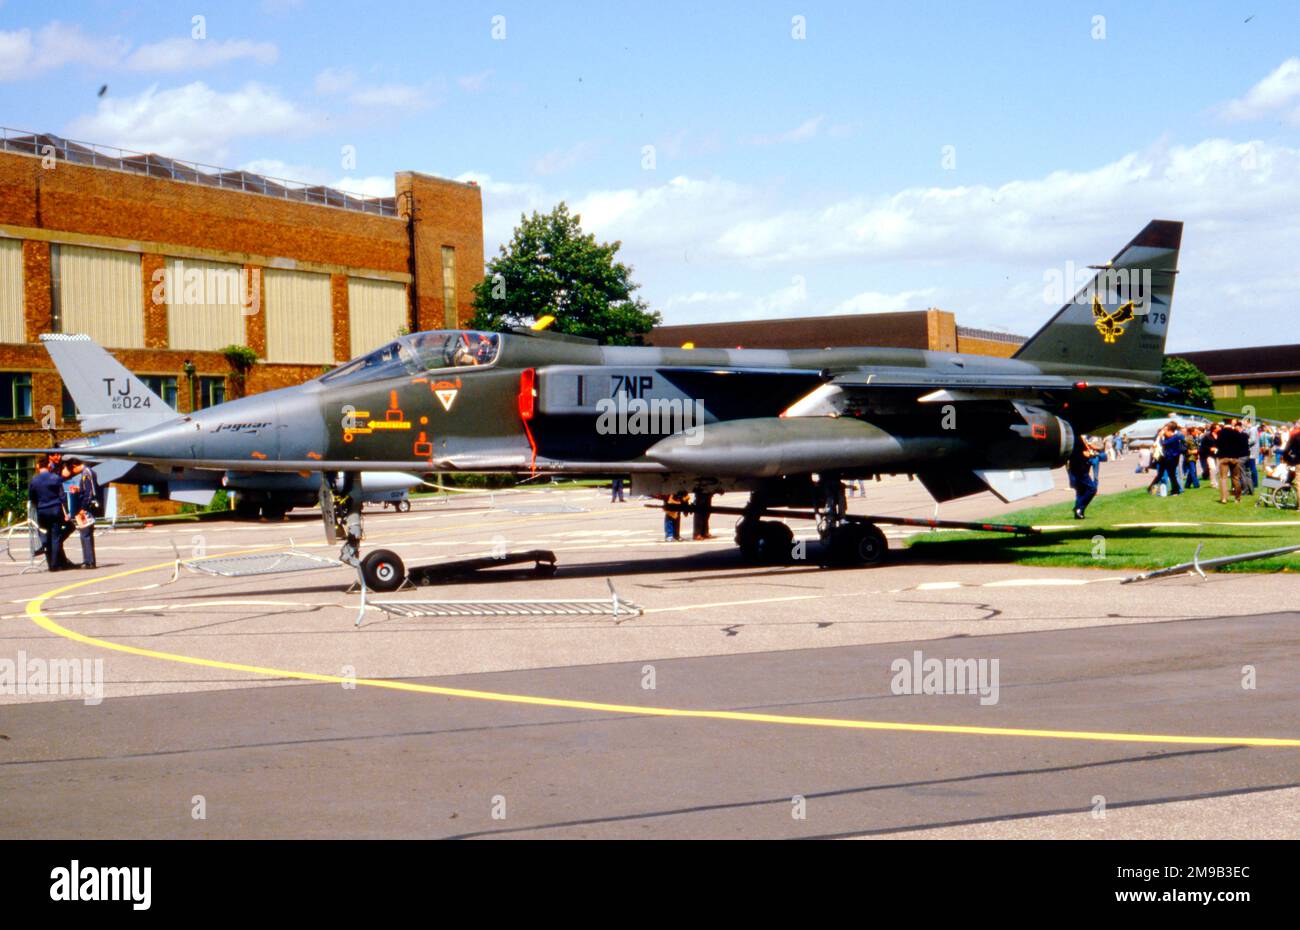 Armee de l'Air - SEPECAT Jaguar A 7-NP (msn A79), di Escadron De Chasse 4-7 'Limousin', o RAF Waddington il 2 agosto 1986. (Armee de l'Air - French Air Force; SEPECAT - Societe Europeenne de production de l'avion Ecole de Combat et d'Appui Tactique). Foto Stock